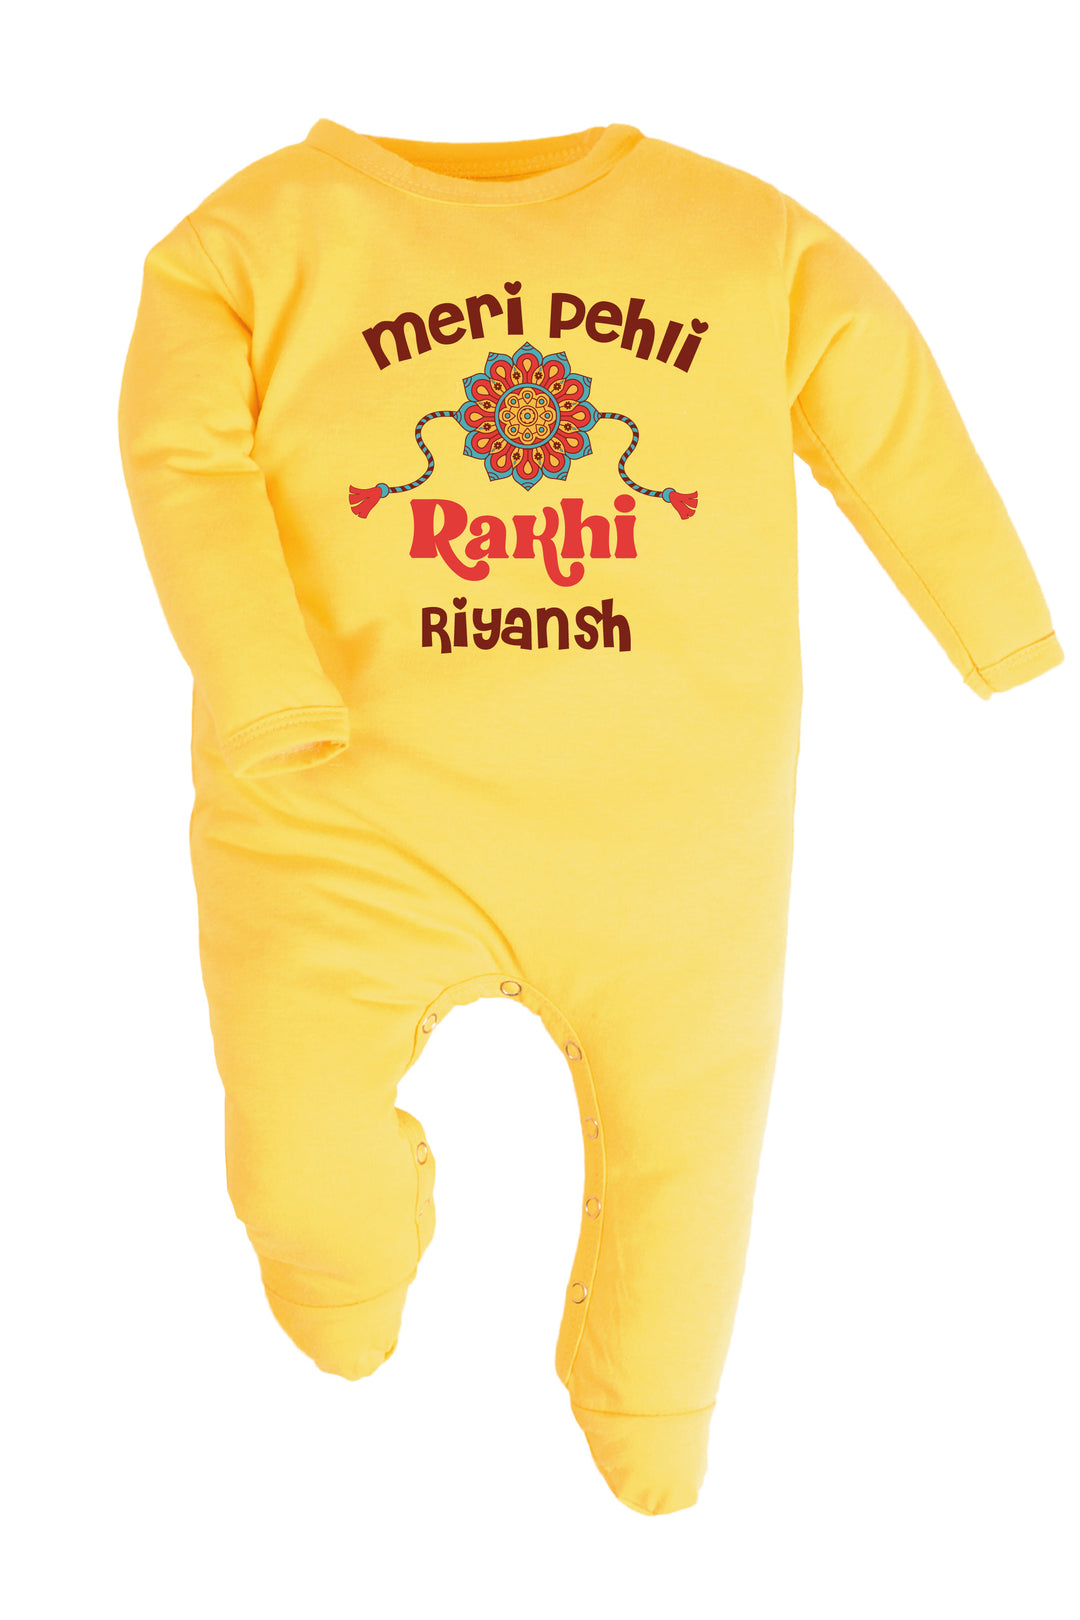 Meri Pehli Rakhi Baby Romper | Onesies w/ Custom Name